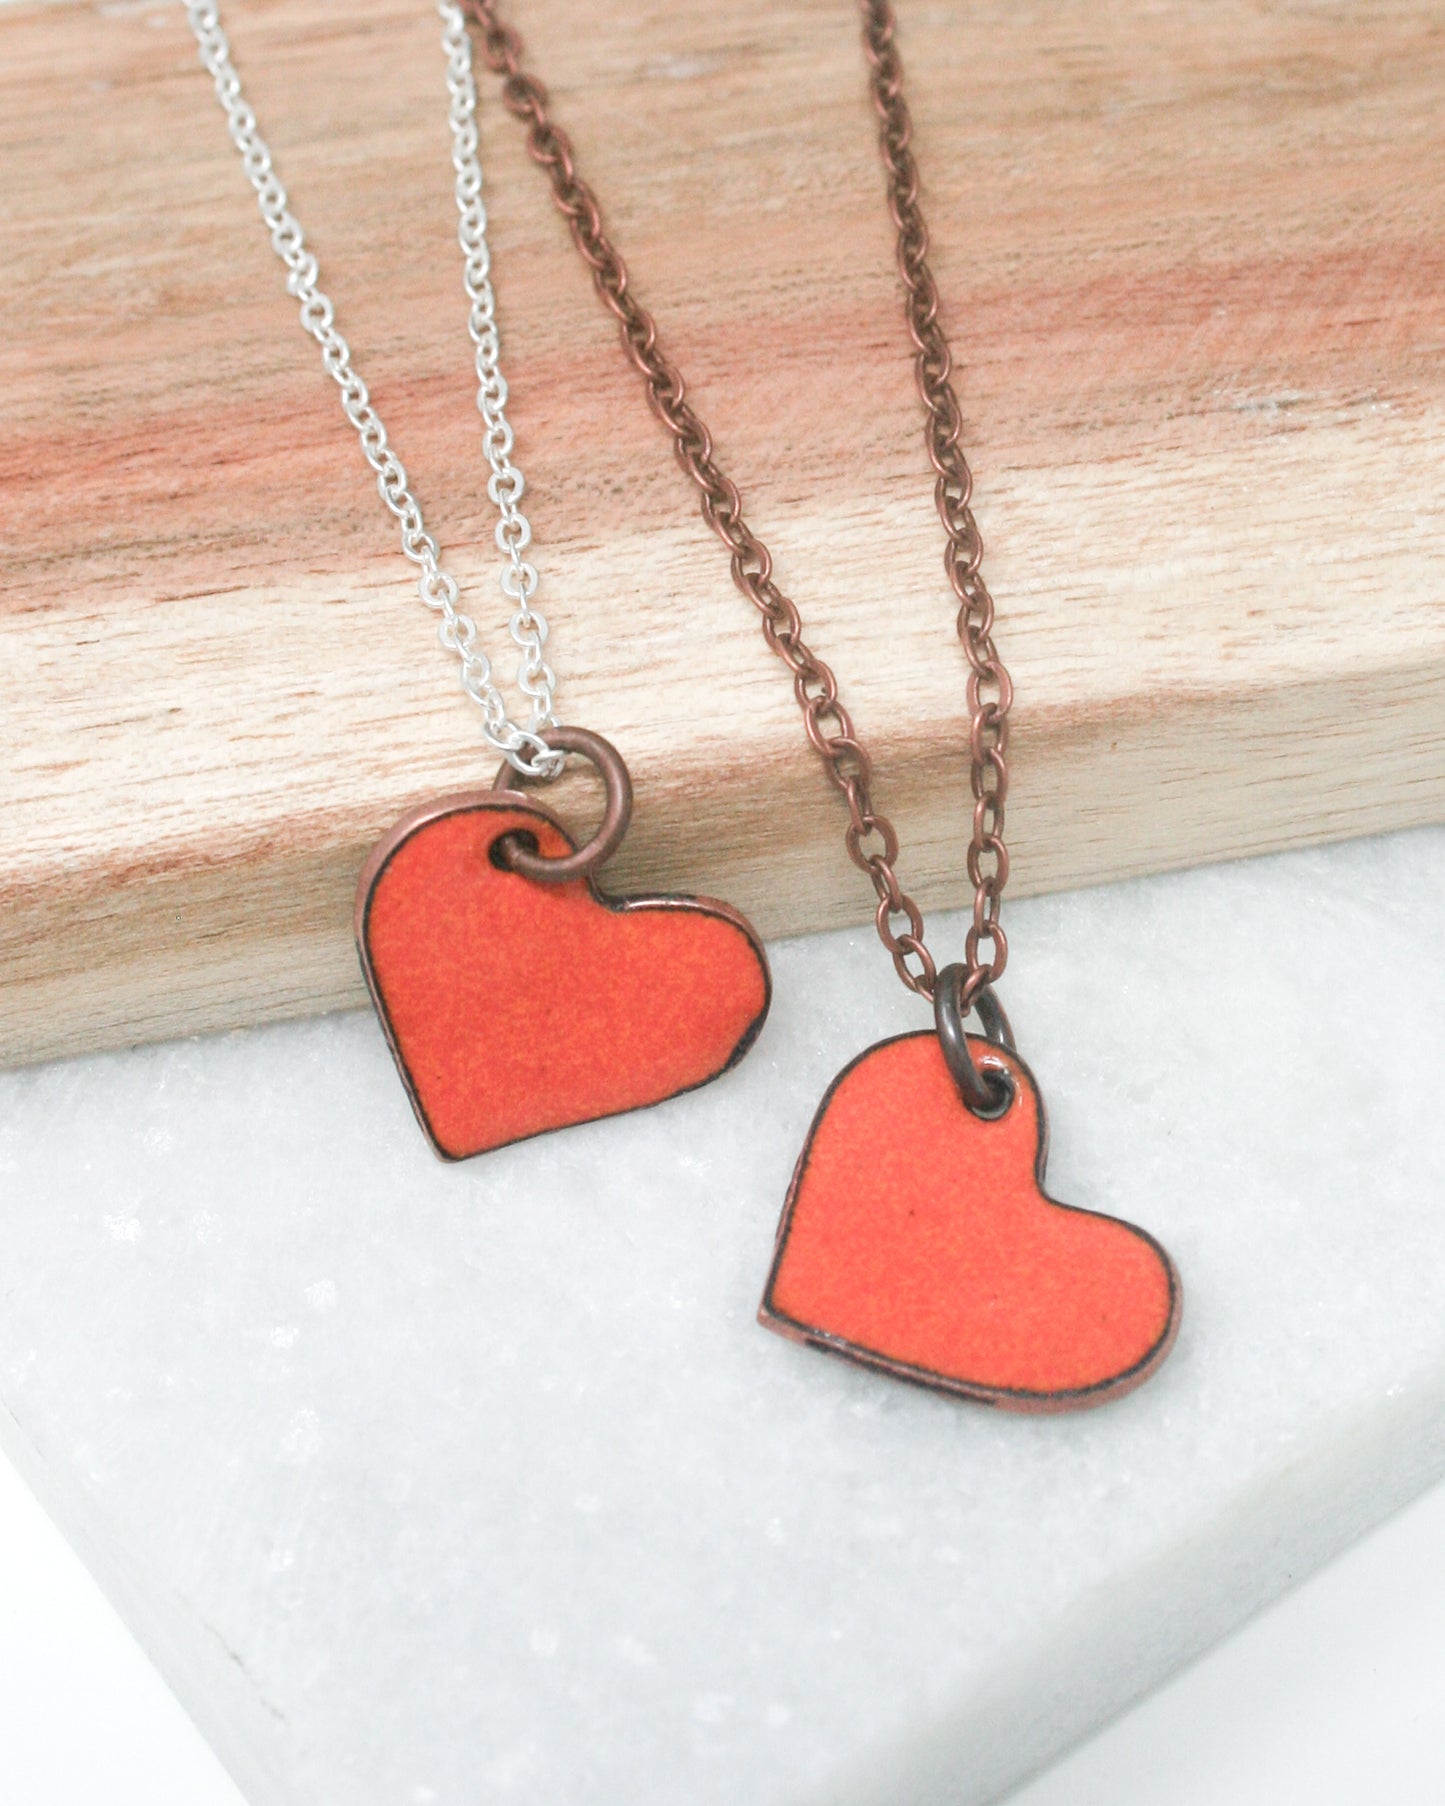 Enamel heart necklaces